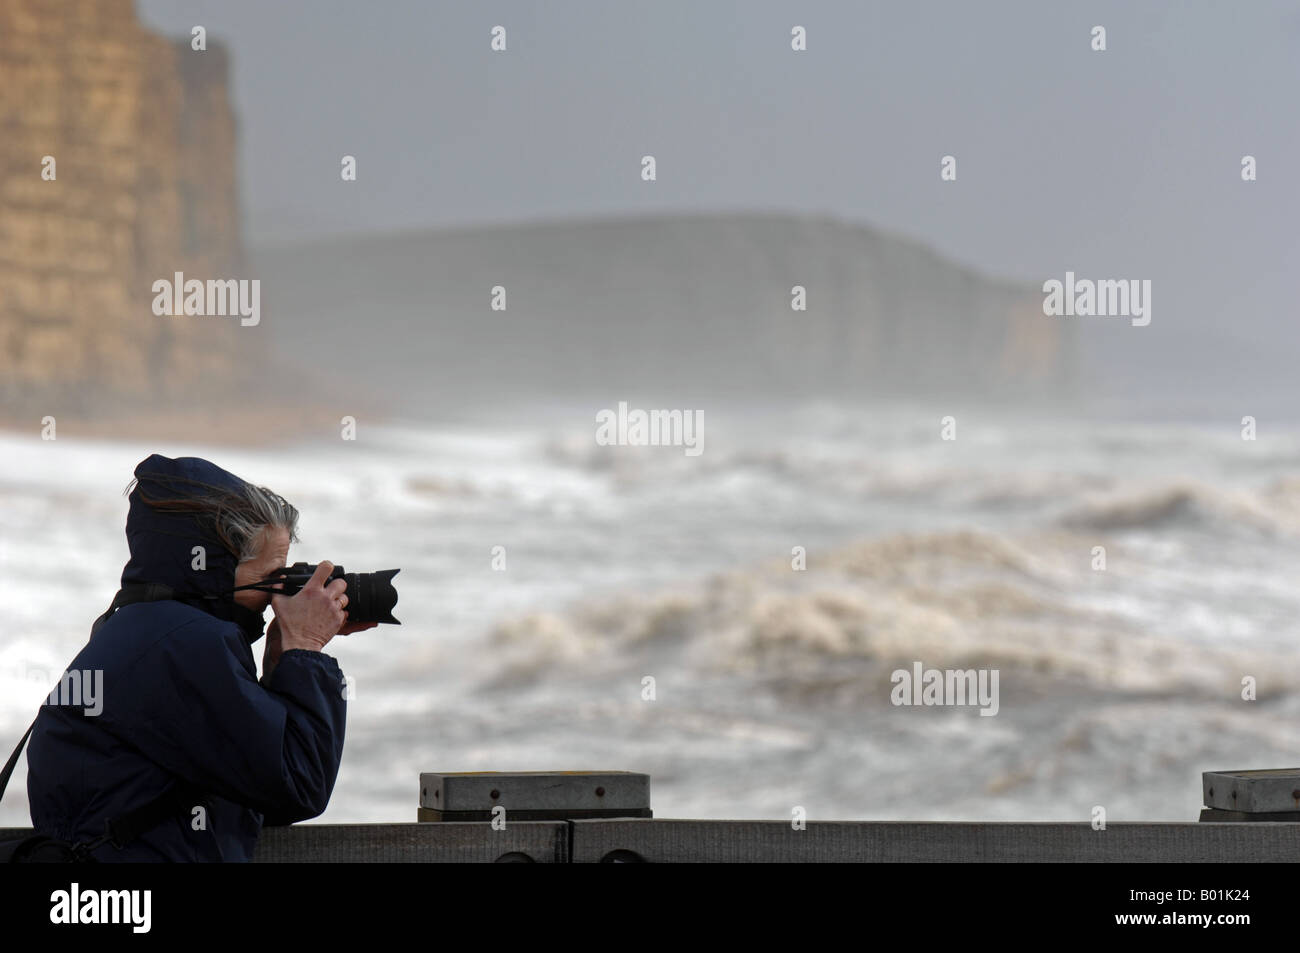 Photographe à East Cliff, West Bay, Dorset, Angleterre, Royaume-Uni Banque D'Images